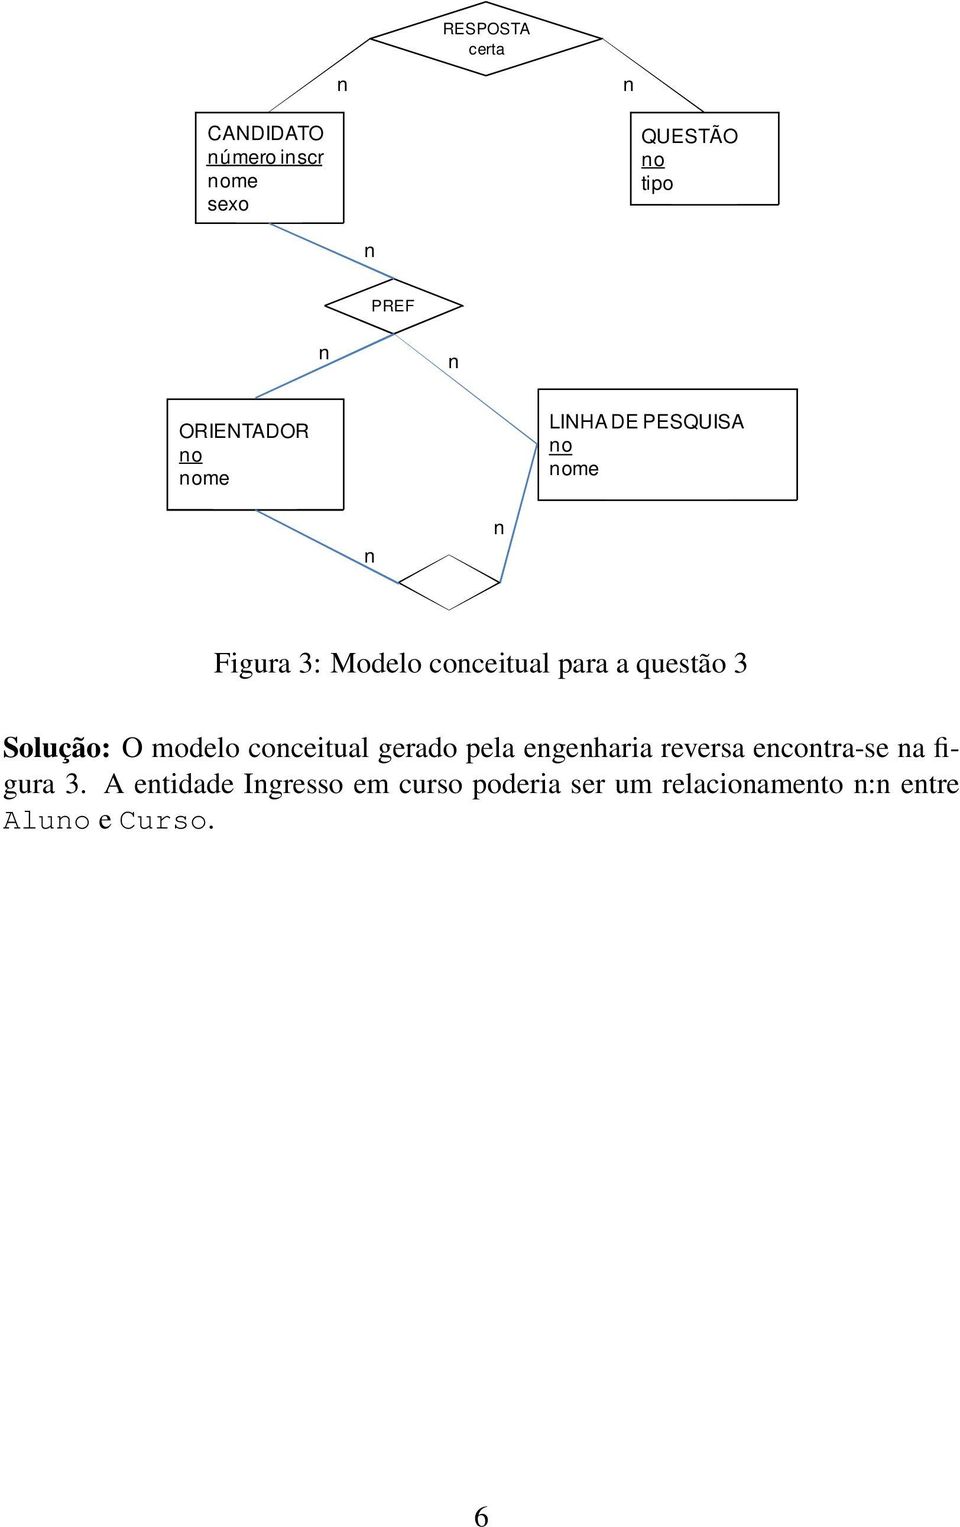 Solução: O modelo coceitual gerado pela egeharia reversa ecotra-se a figura